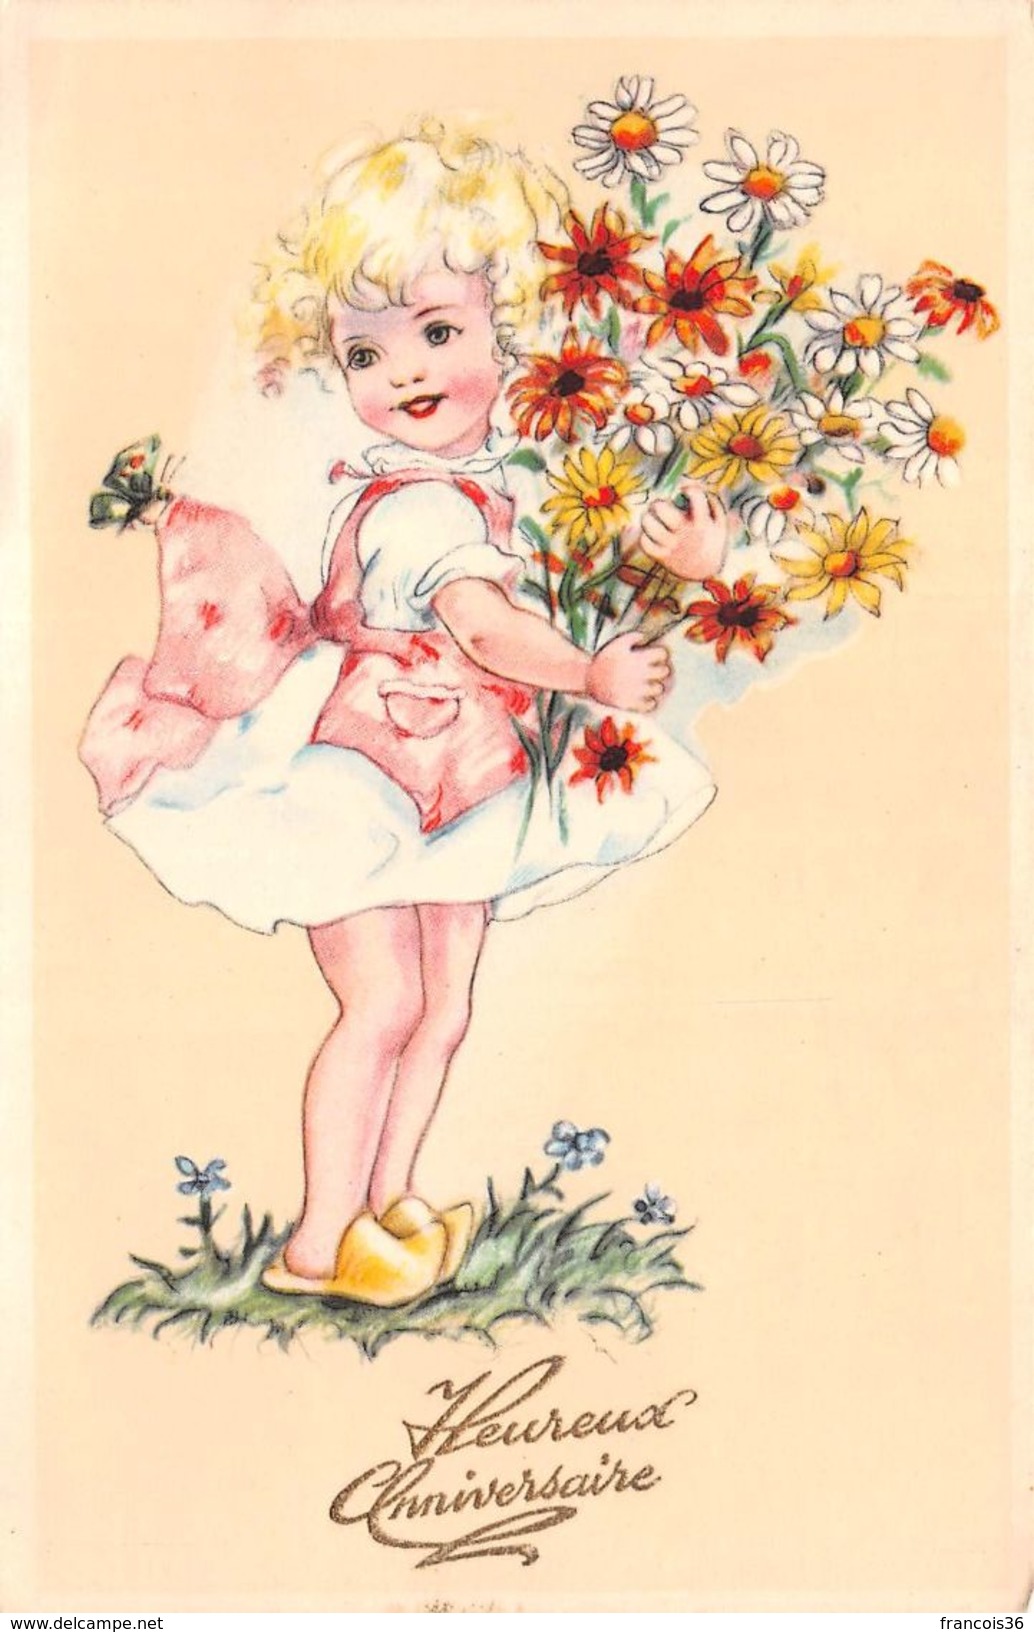 Lot de 90 CPA Fantaisies 1900s 1950s : Femmes enfants couples illustrations fleurs etc